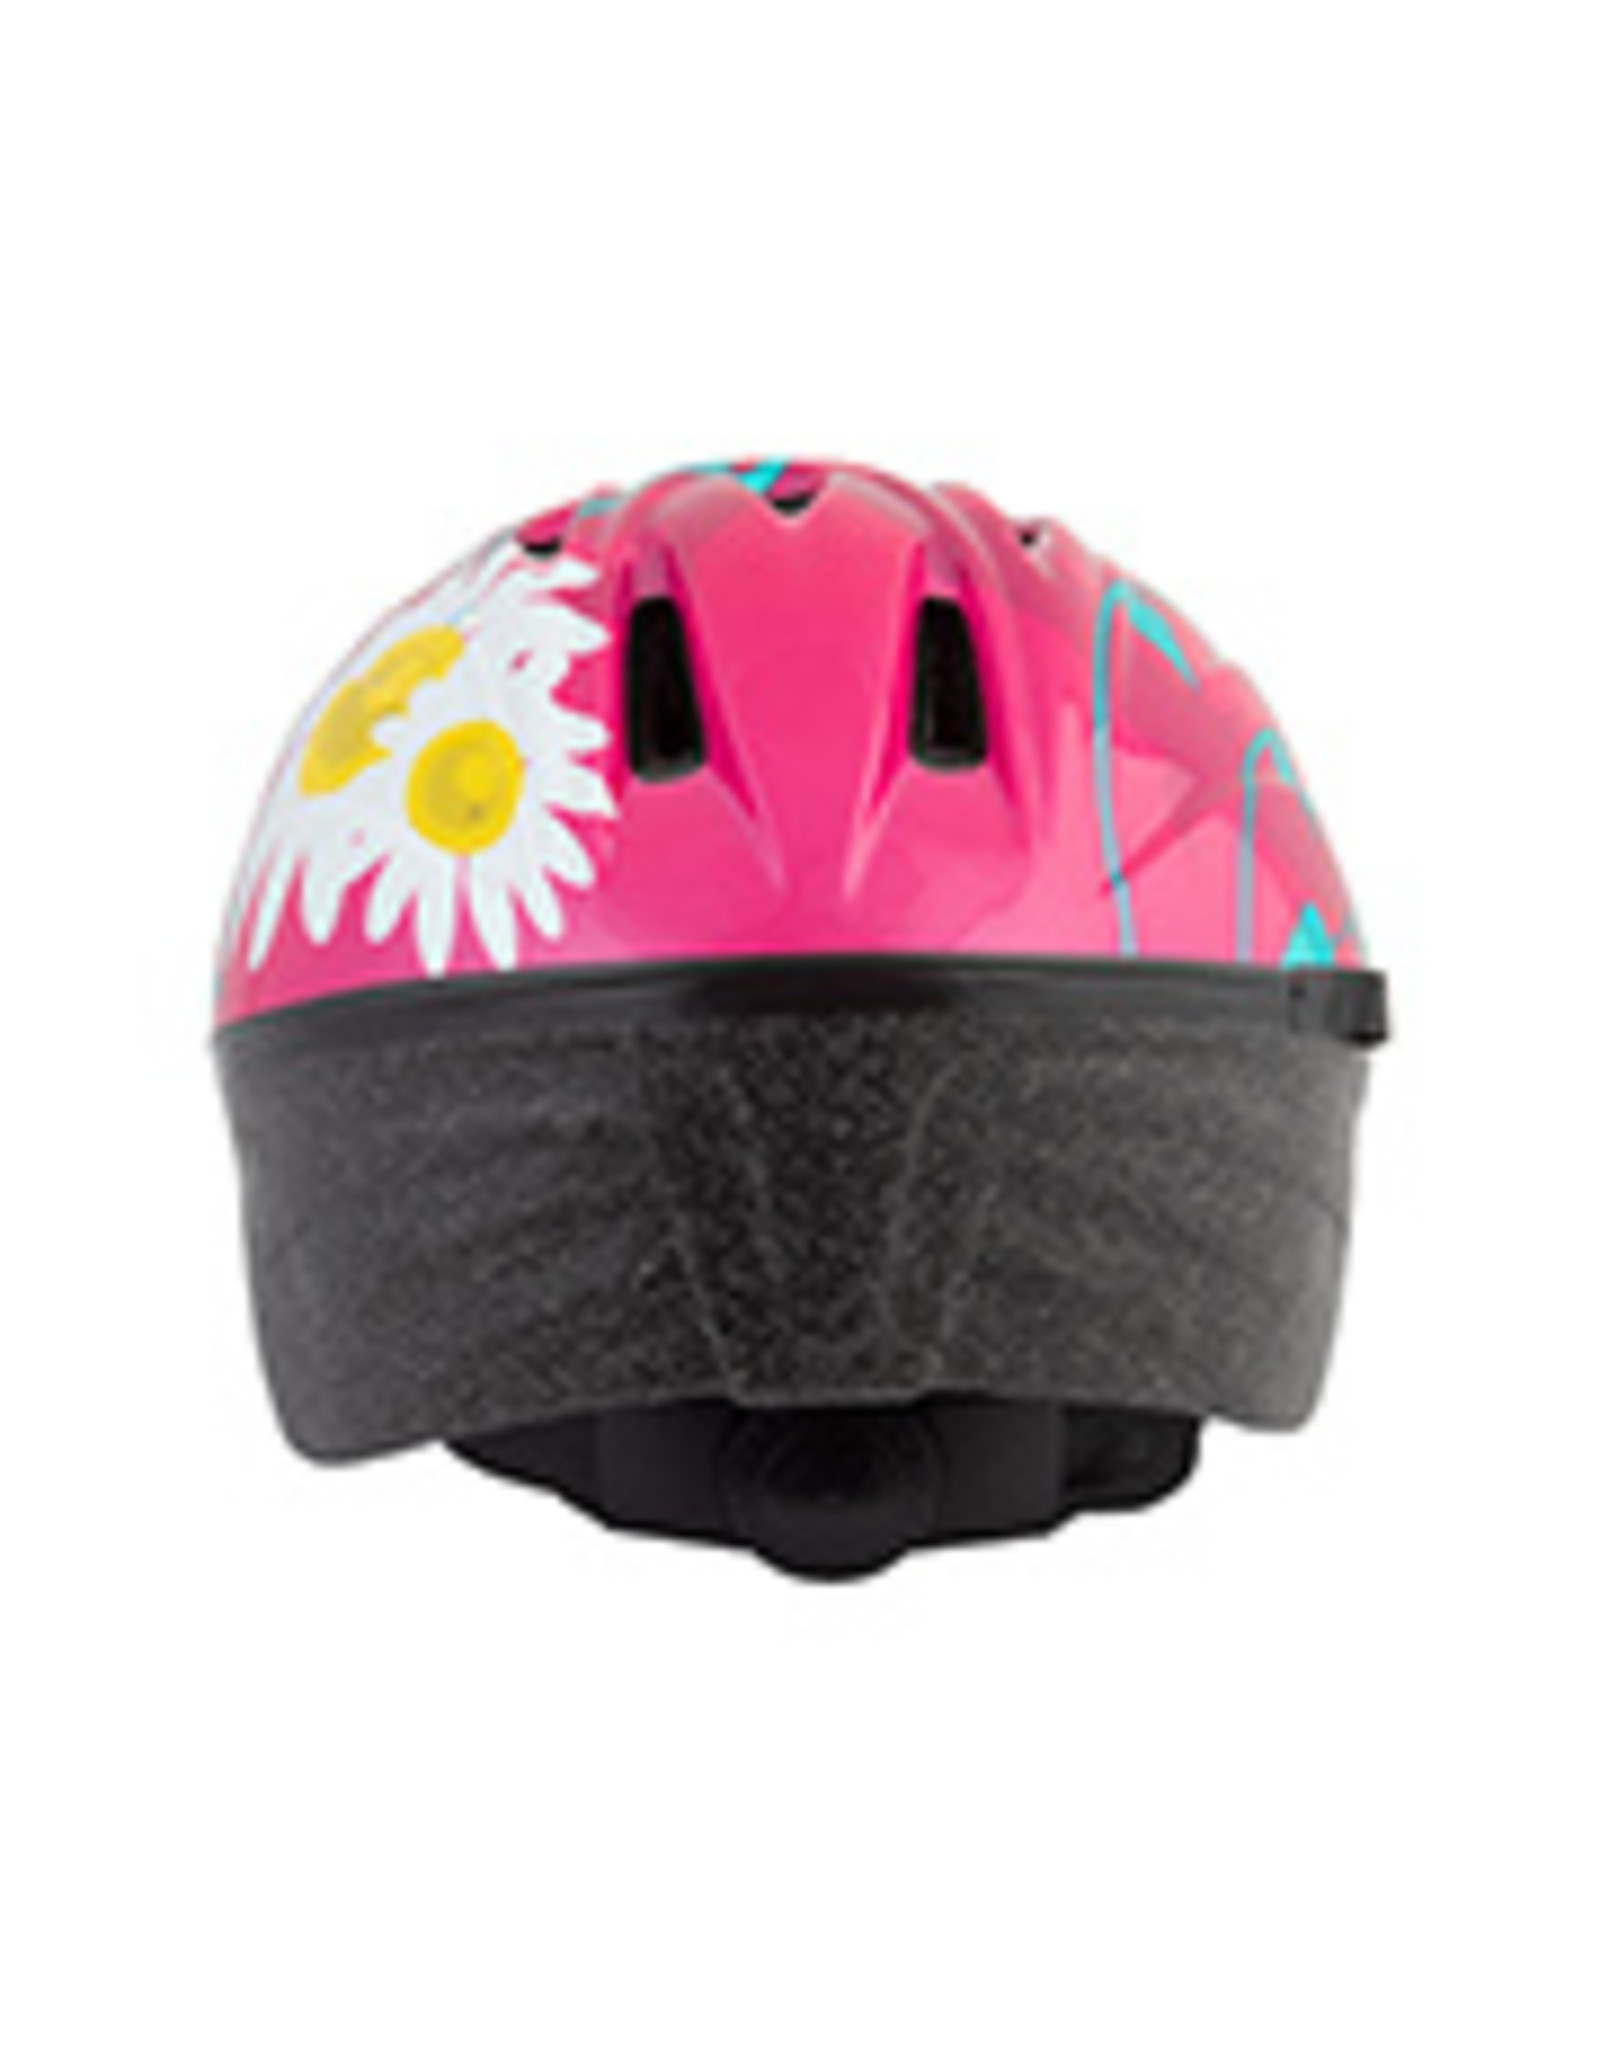 Helmet Butterfly, SM/MD, pink